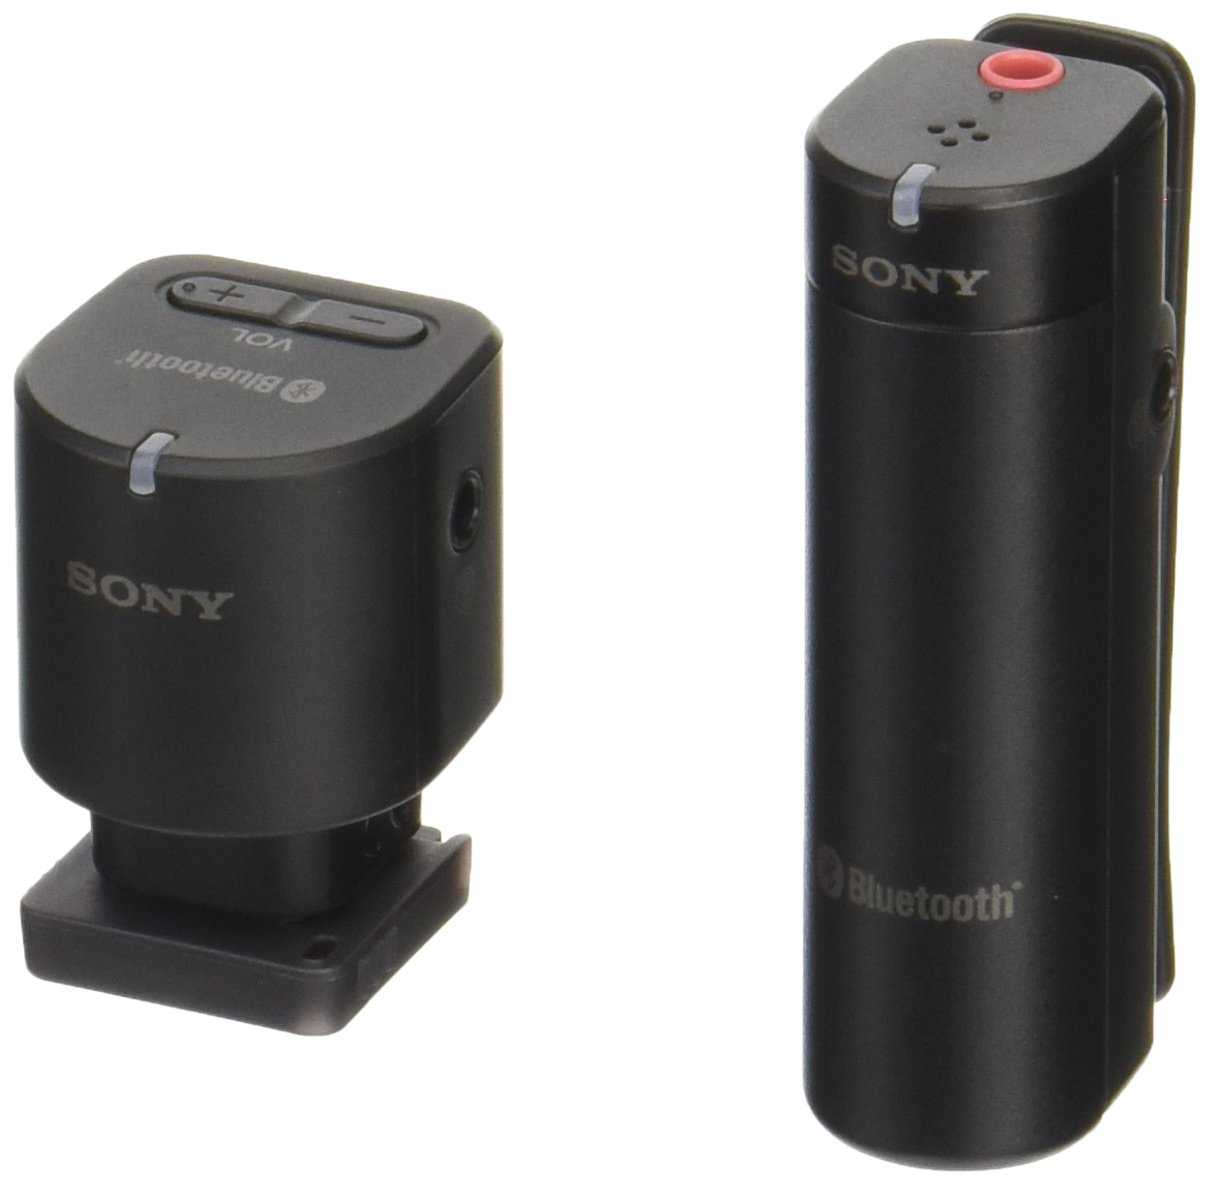 SONY 索尼 ECM-W1M 無線 藍牙 相機 攝影機 麥克風 | 金曲音響